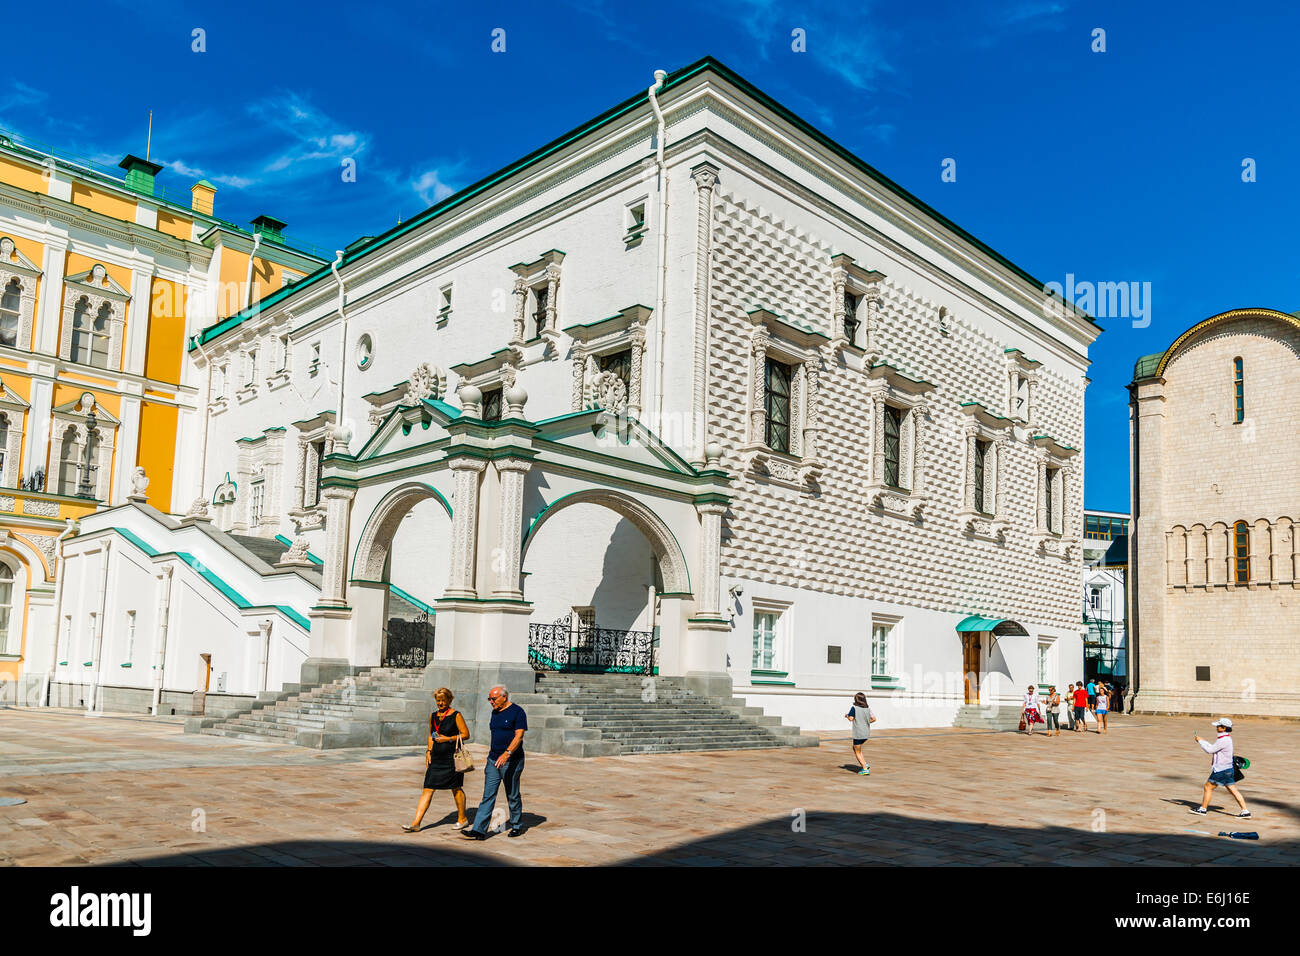 Ансамбль кремлевского Кремля Грановитая палата